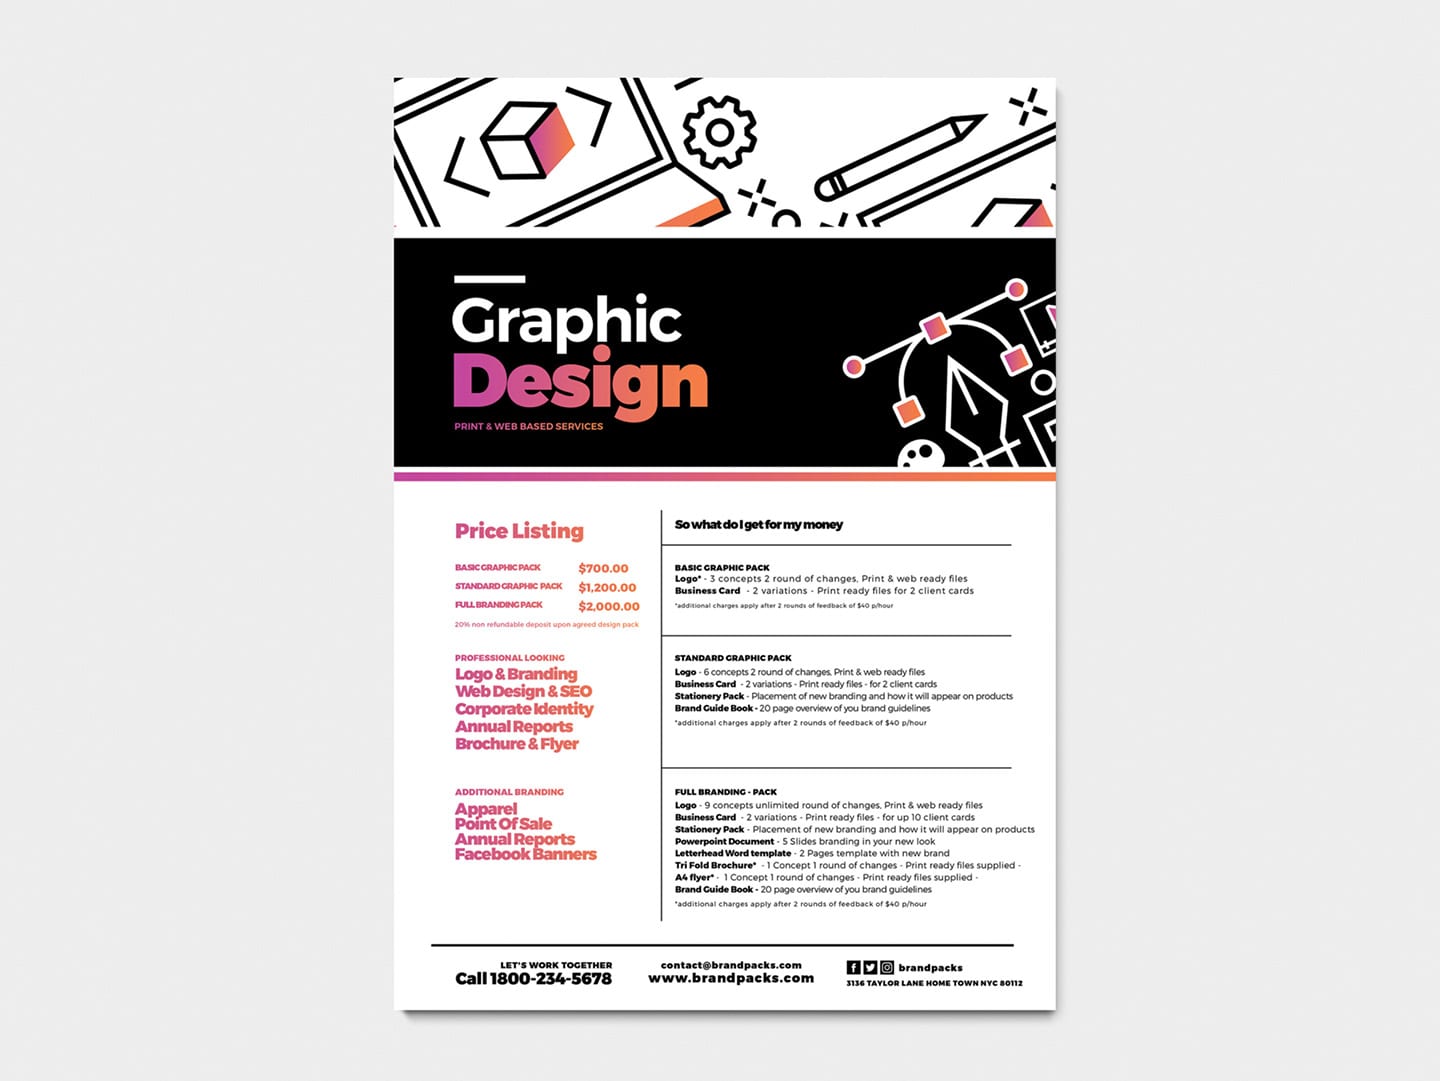 Graphic Design Agency Poster Template v2 - BrandPacks